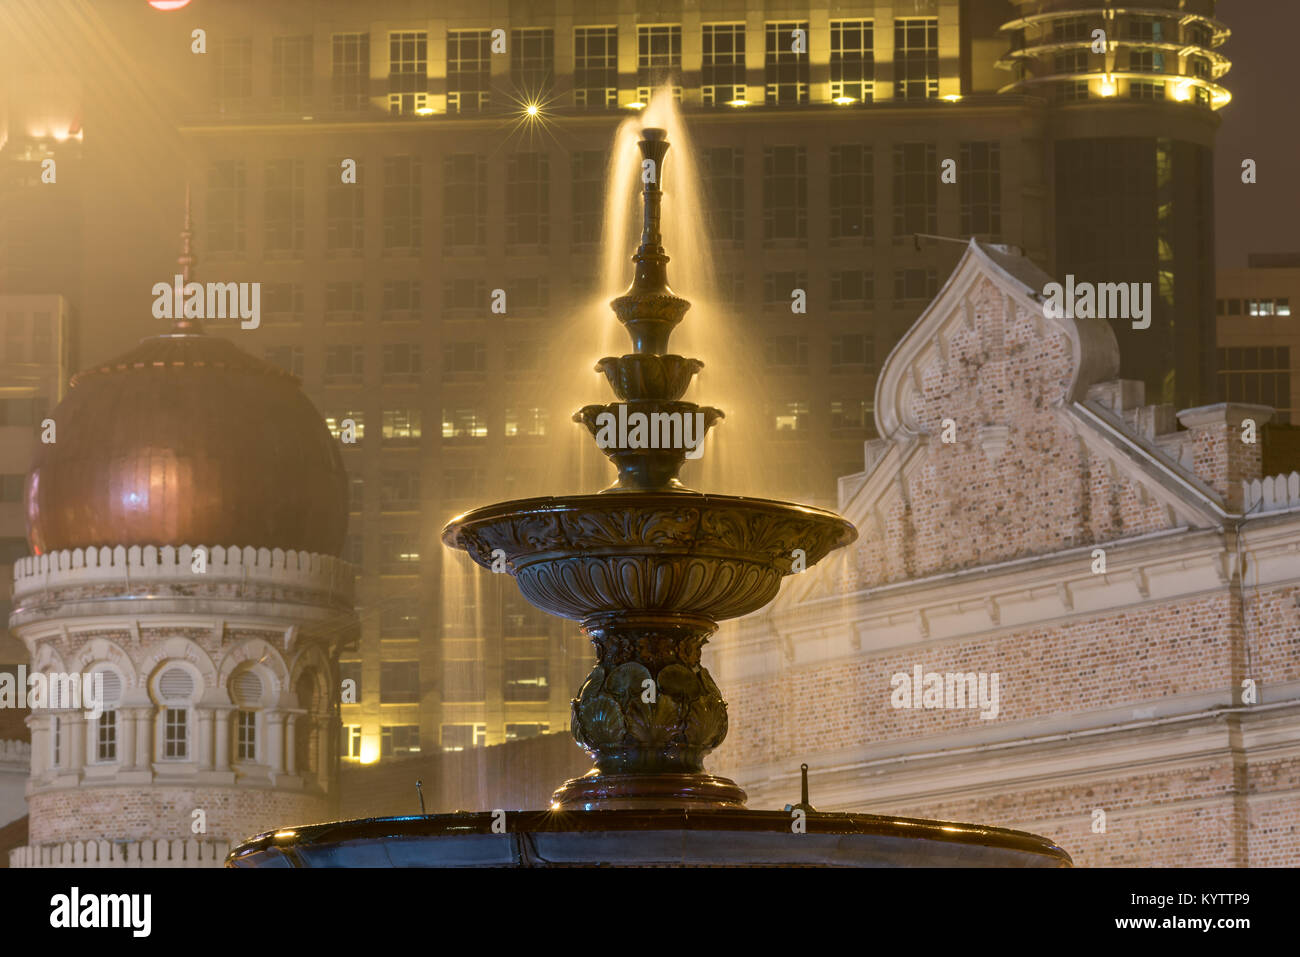 La nuit longue exposition photo de l'impressionnante fontaine de l'époque victorienne dans Merdeka Square, Kuala Lumpur, Malaisie. Banque D'Images